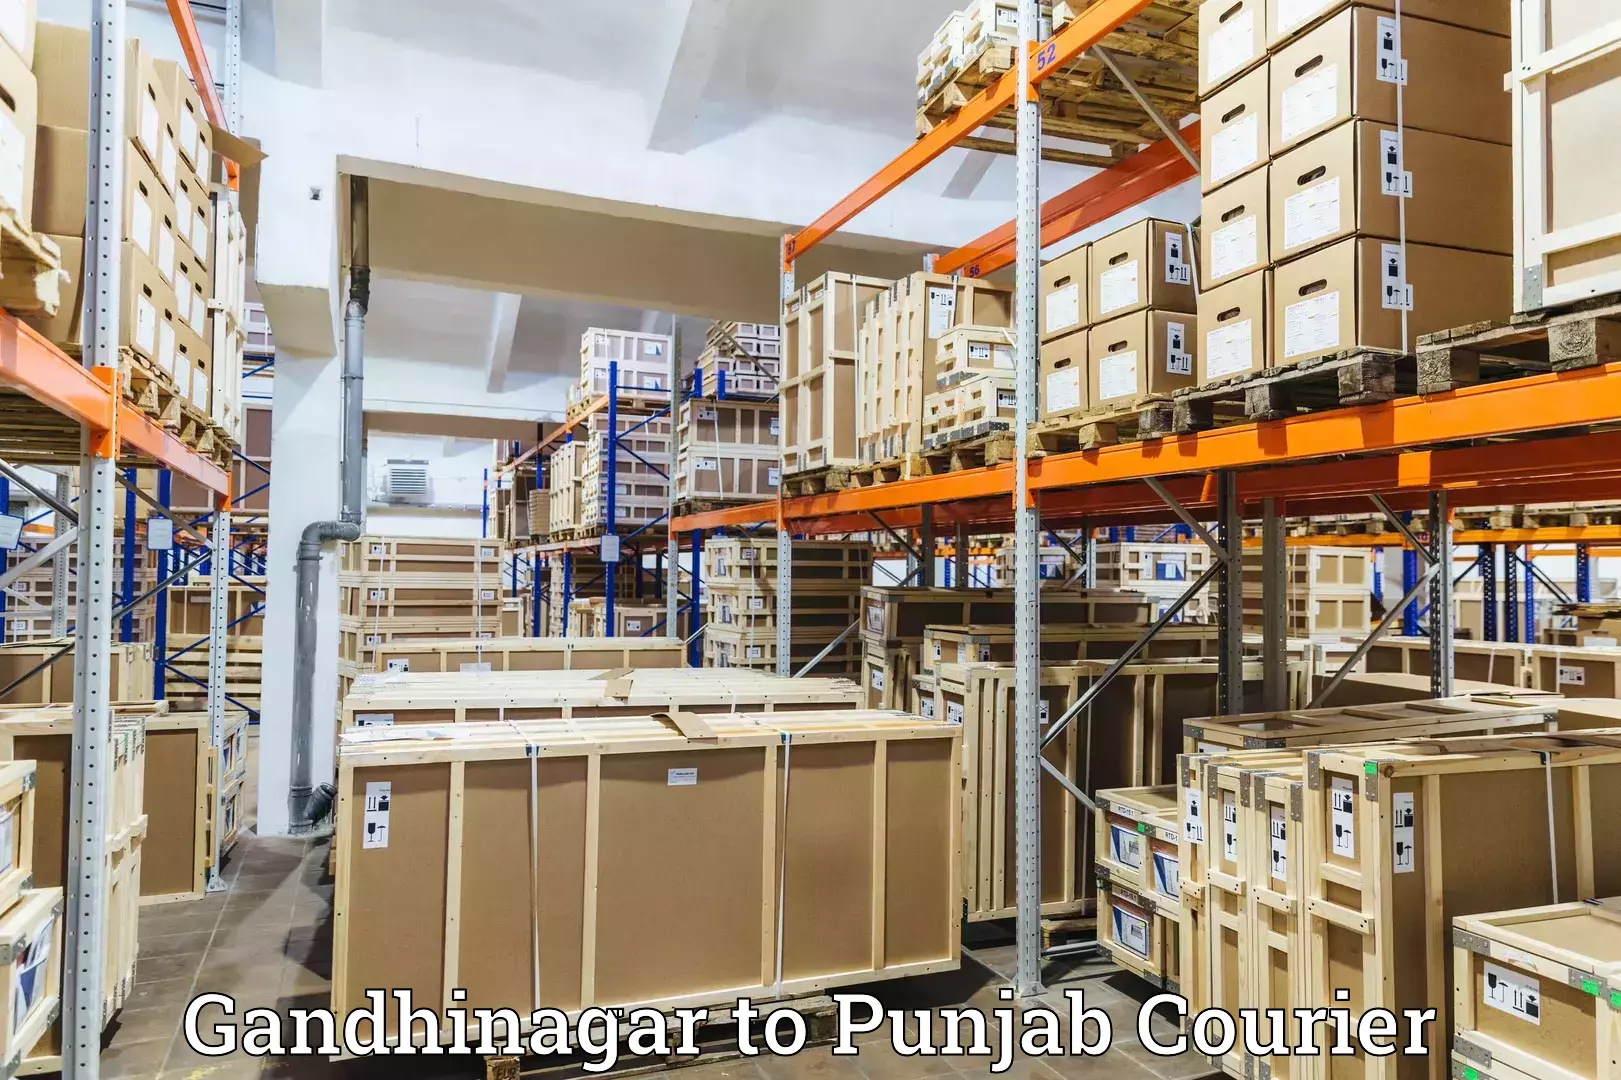 Customer-friendly courier services Gandhinagar to Talwandi Sabo